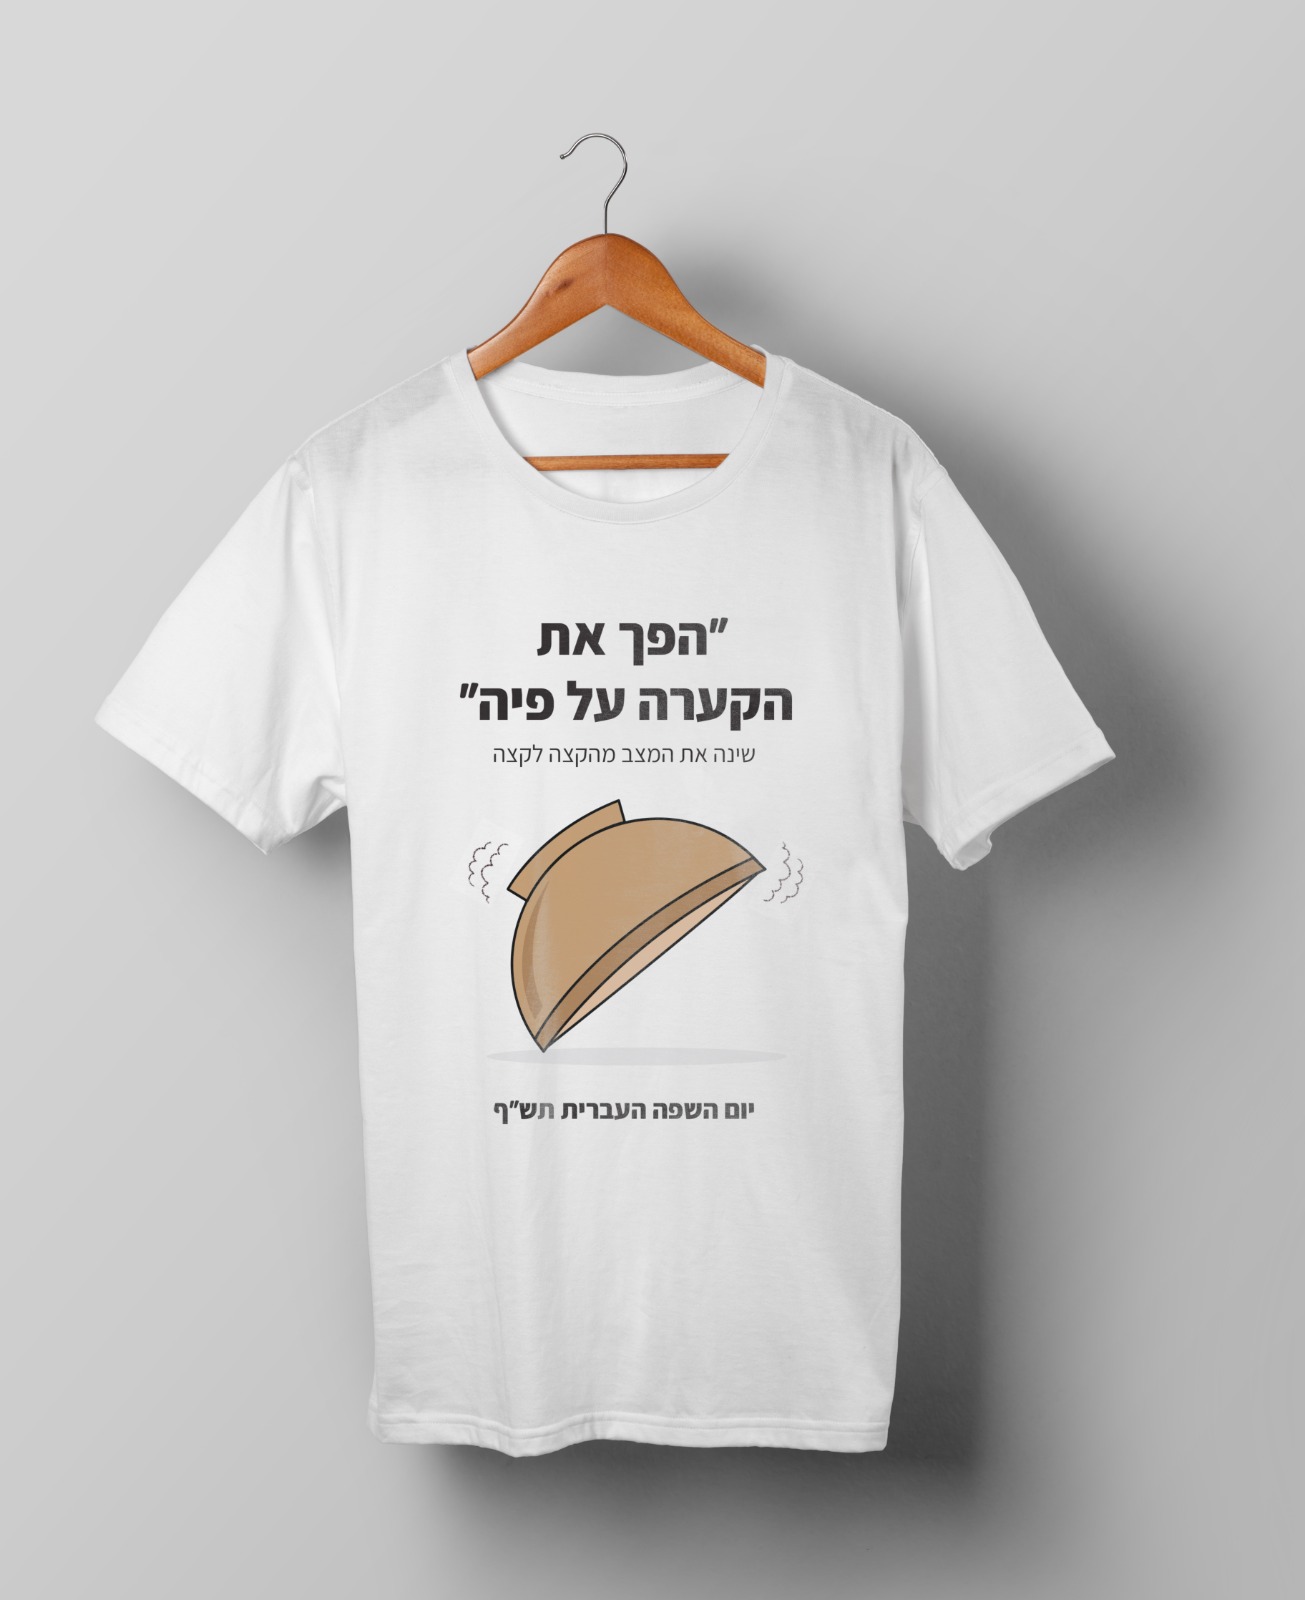 חולצות יום השפה העברית תש"ף בעיצוב סטודנטיות שנה ג' מהמחלקה לתקשורת חזותית במכללת אמונה